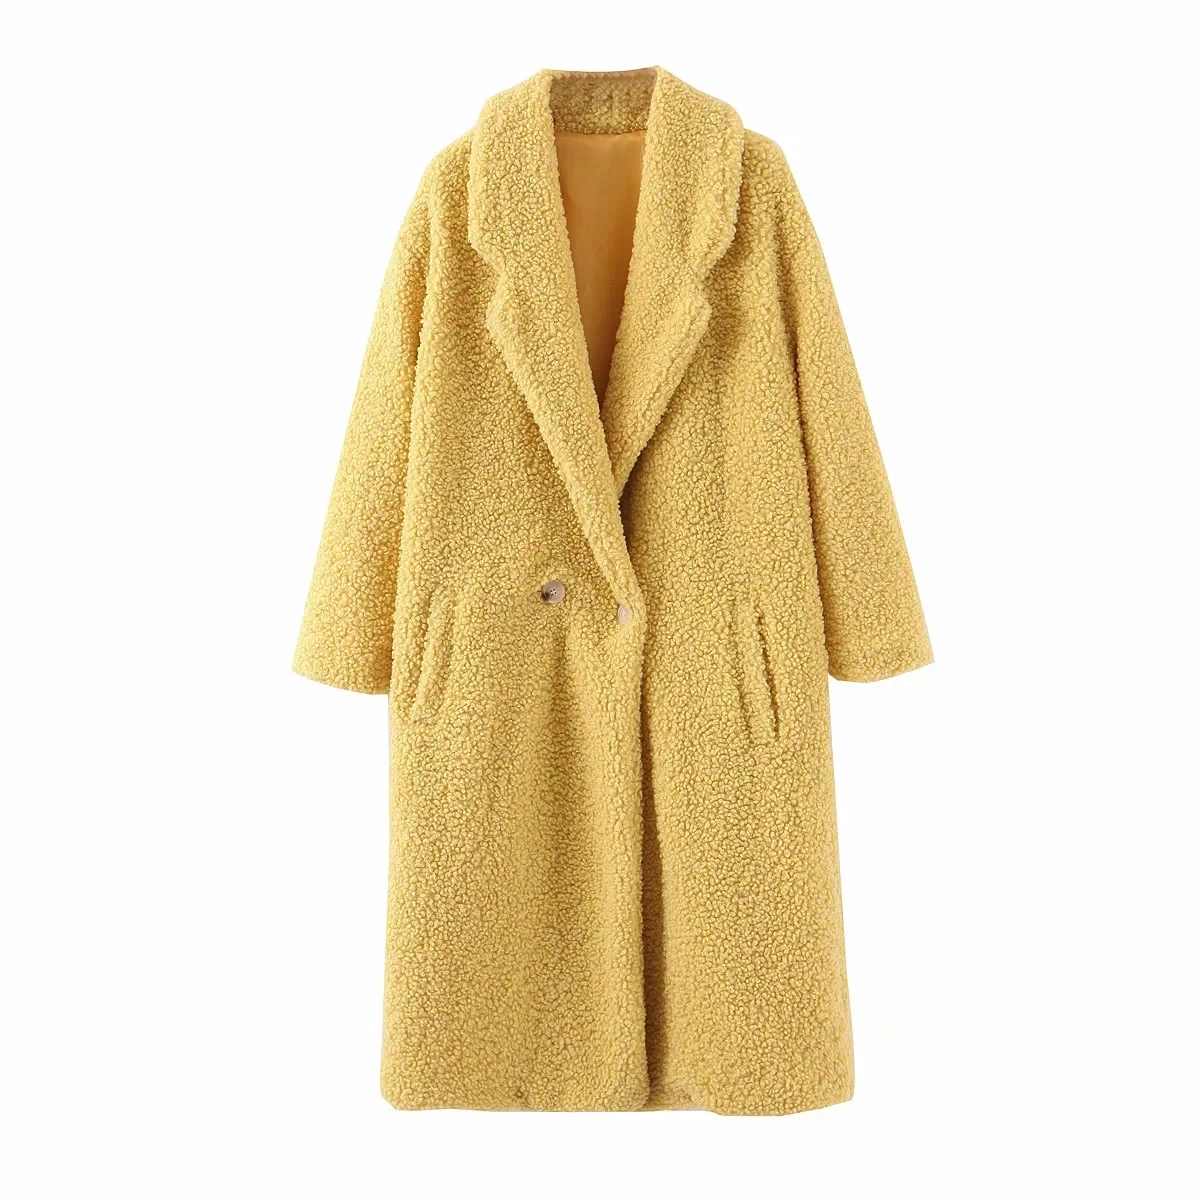 Теплое зимнее пальто для женщин kawaii плюшевое пальто винтажное желтое пальто из искусственного меха женская меховая куртка больших размеров Верхняя одежда уличная одежда - Цвет: yellow